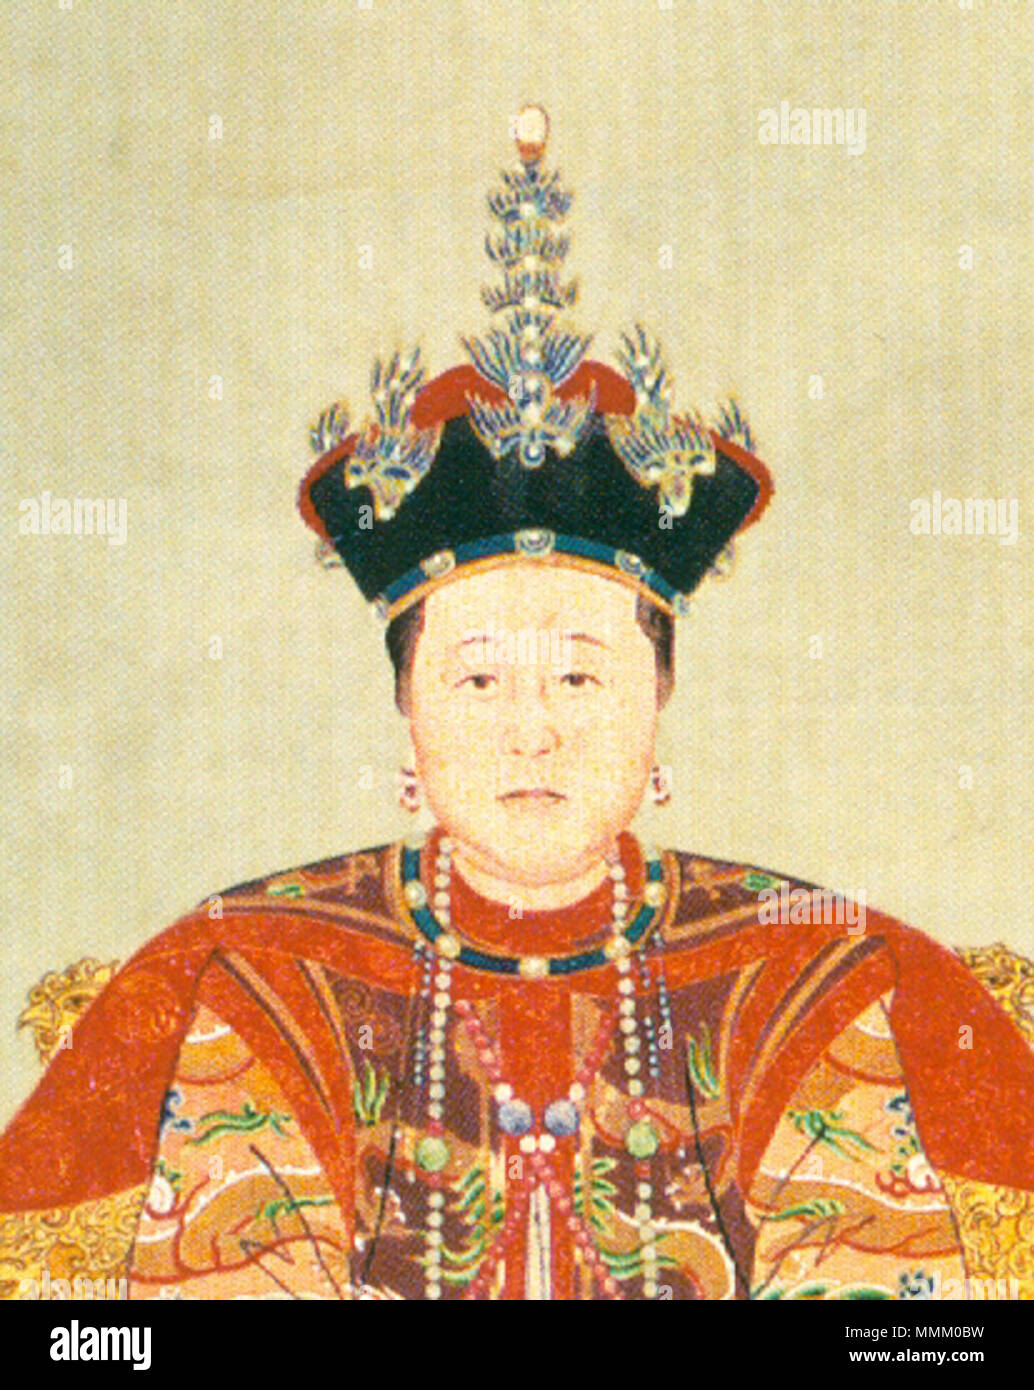 . Inglese: questo è un dettaglio di 'Ritratto della Consorte Zhuang in costume di corte" (莊妃朝服像) dipinta su una carta di scorrimento (92 x 53 cm), che rappresenta Bumbutai (1613-1688), un Khorchin Mongol dei clan Borjigit che era una delle mogli di Hong Taiji (1592-1643), il secondo imperatore della dinastia Qing. Denominata 'consorte Zhuang' nel 1636, diventò Empress Dowager quando i suoi cinque-anno-vecchio figlio Fulin riuscito Hong Taiji come Shunzhi imperatore nel 1643. Lei è noto postumo come Empress Dowager Xiaozhuang. . Tra 1636 e 1643. Anonimo pittore di corte della dinastia Qing consorte Zhuang in tribunale costume ( Foto Stock